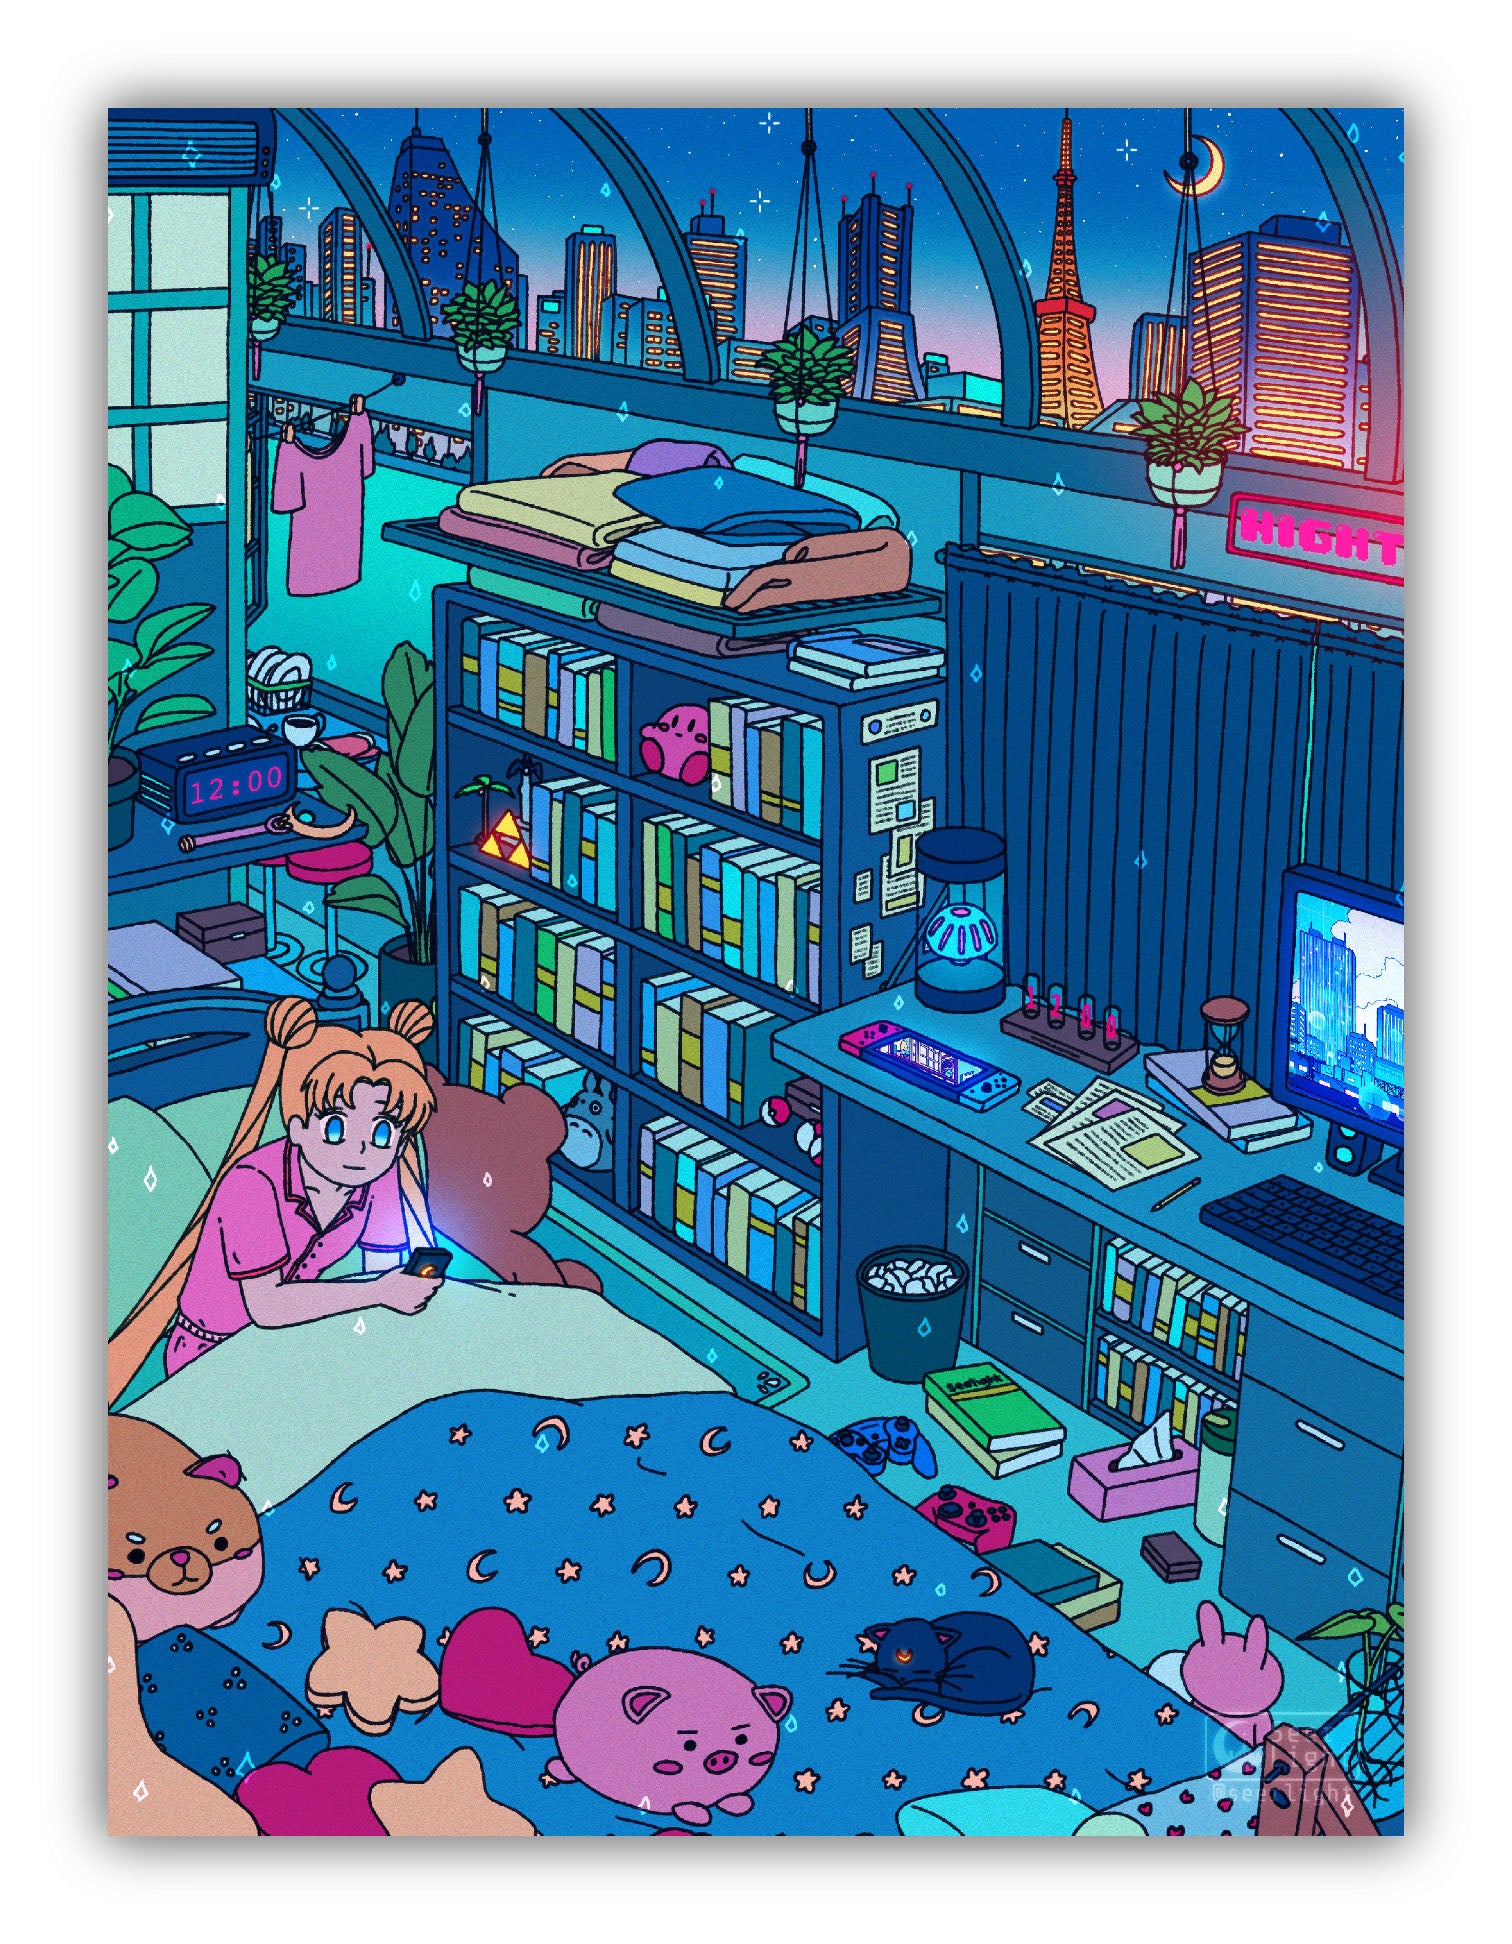 Usagi's Room